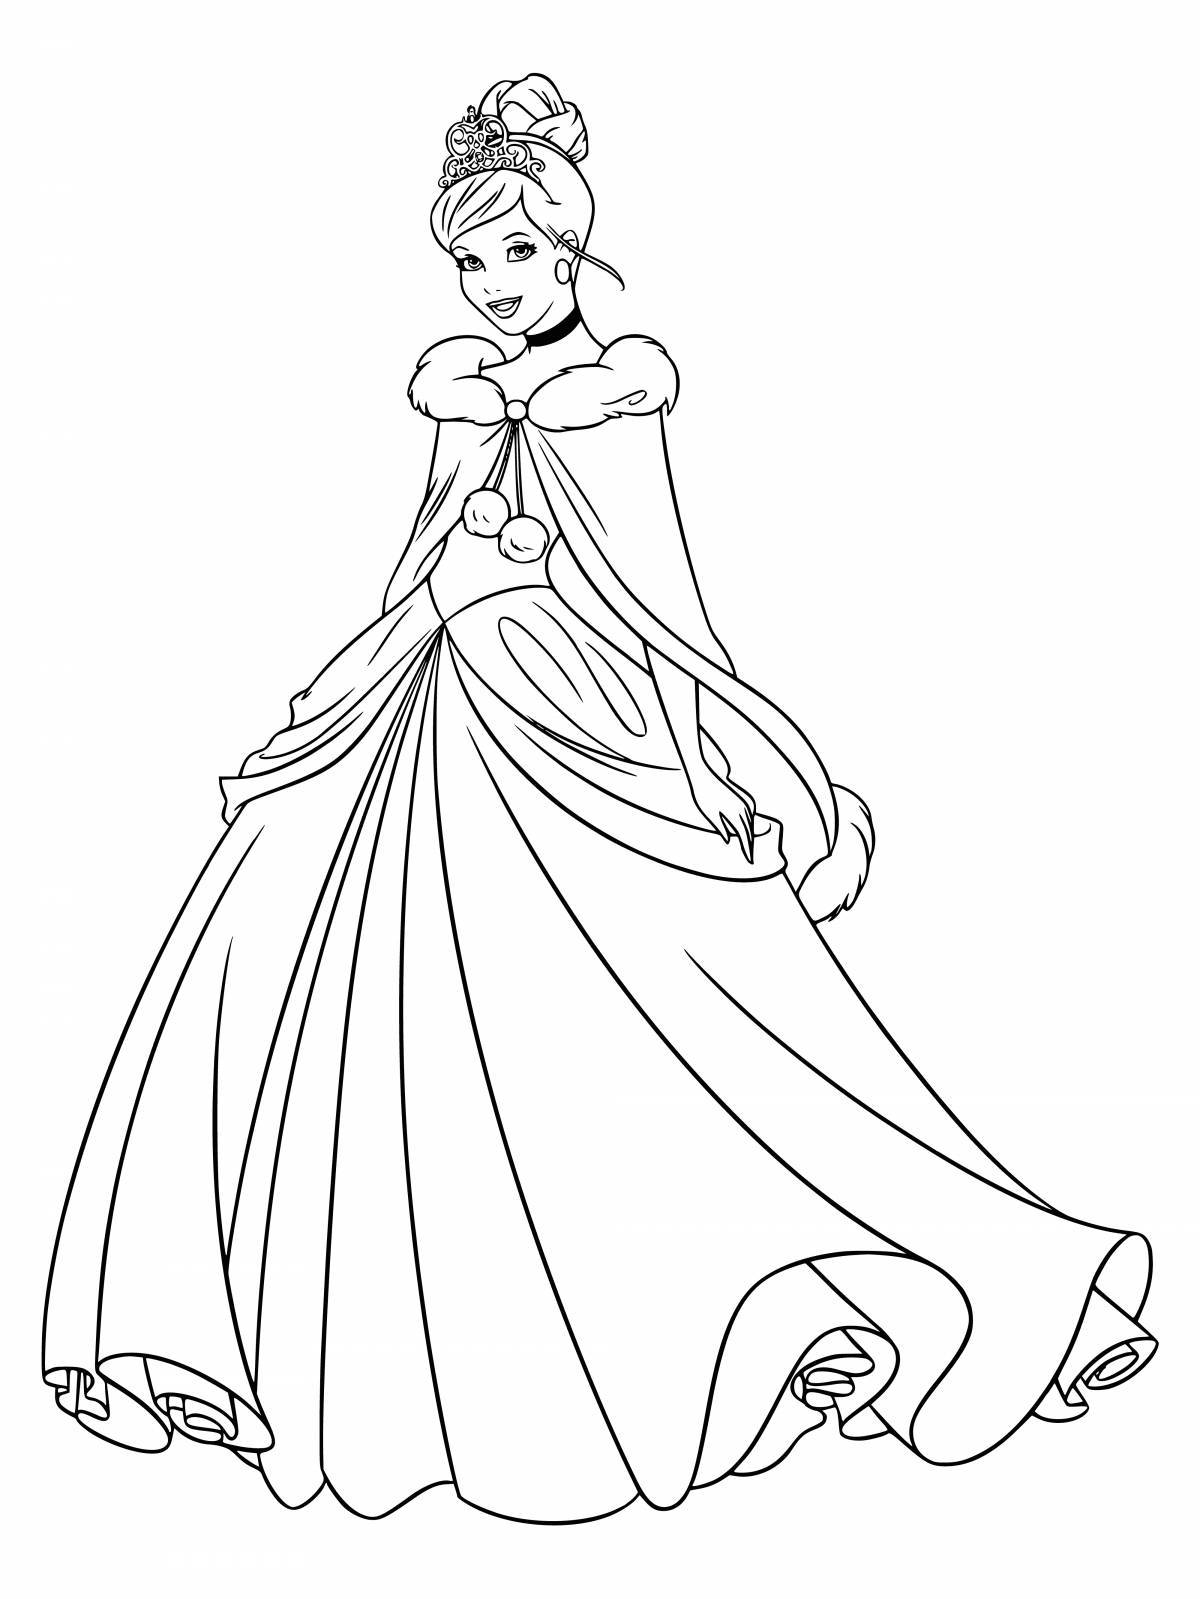 Раскраски Принцессы диснея в красивых платьях 32 шт скачать или